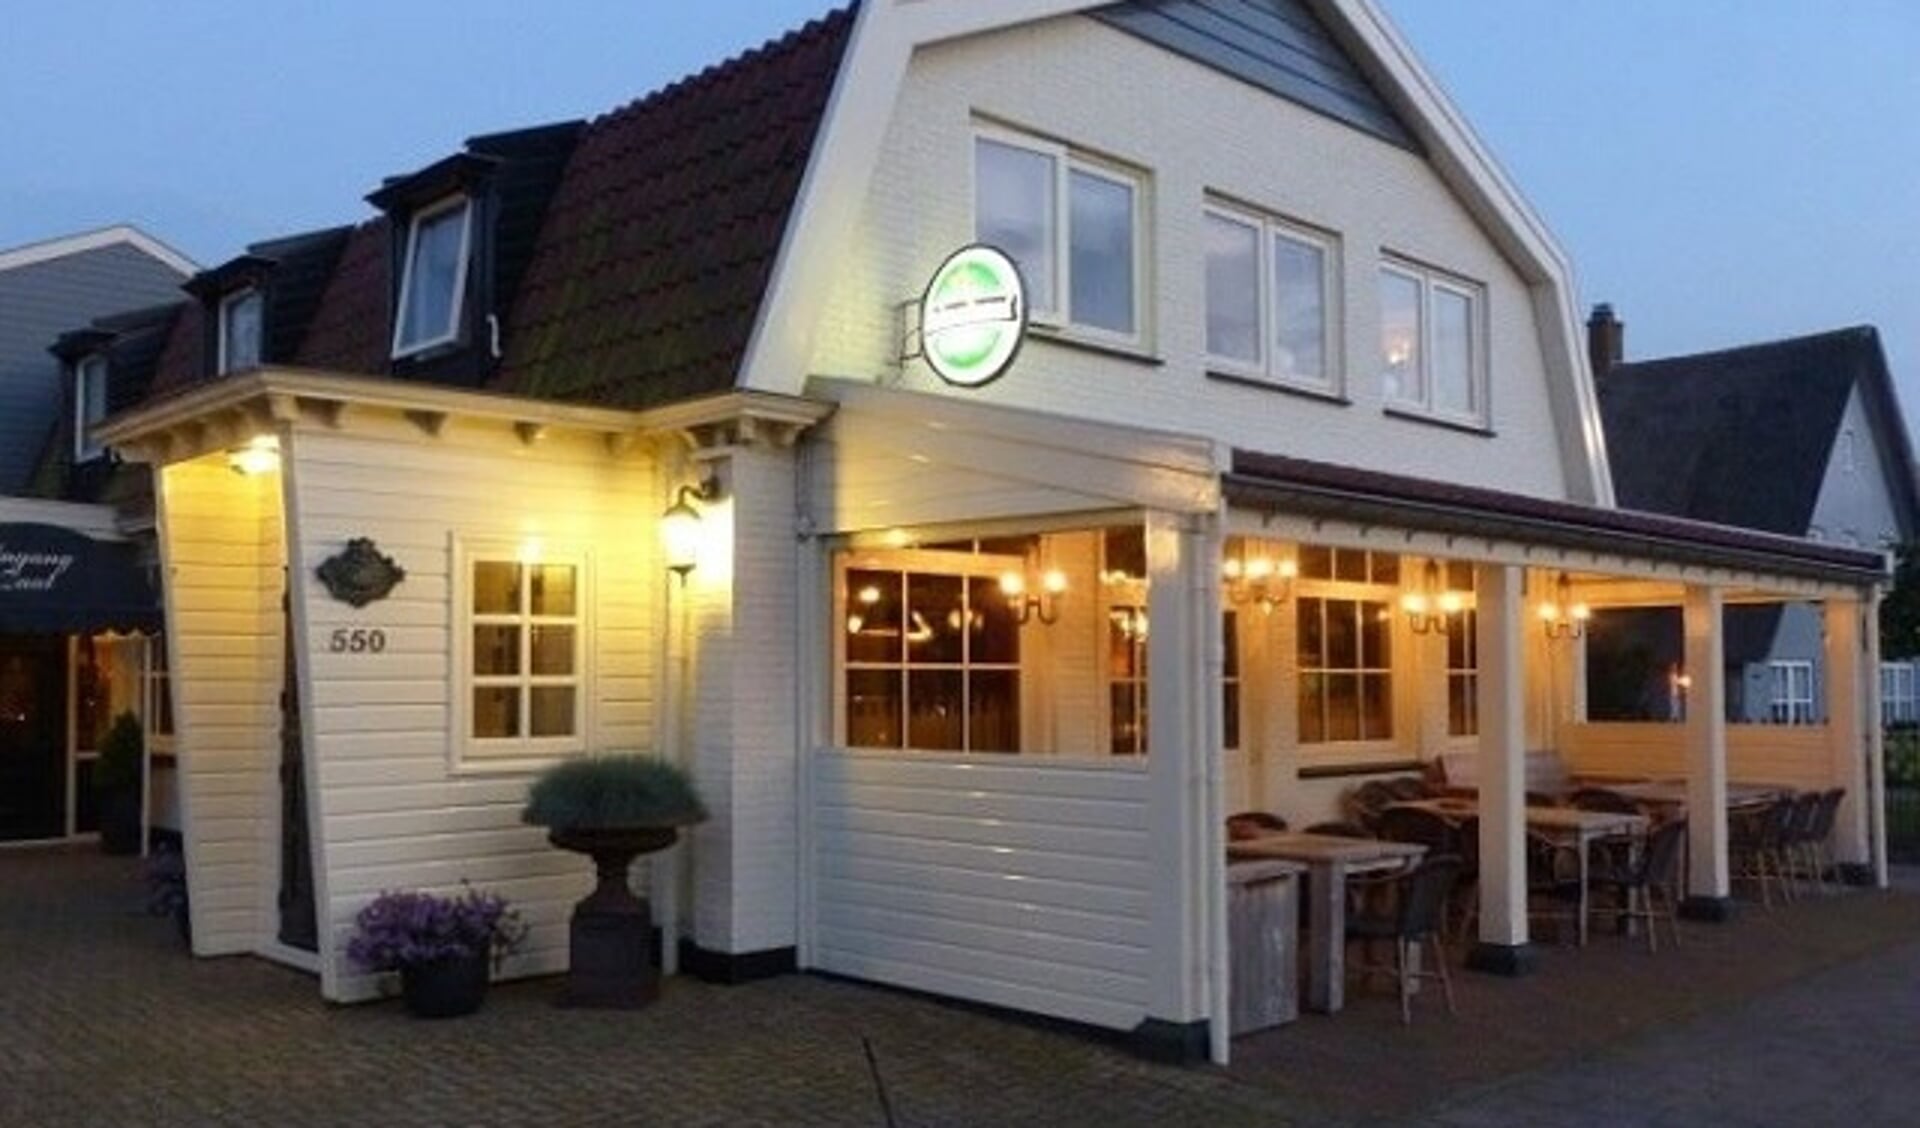 Café en partycentrum Bleeker; al 65 jaar een vertrouwd adres in De Noord.